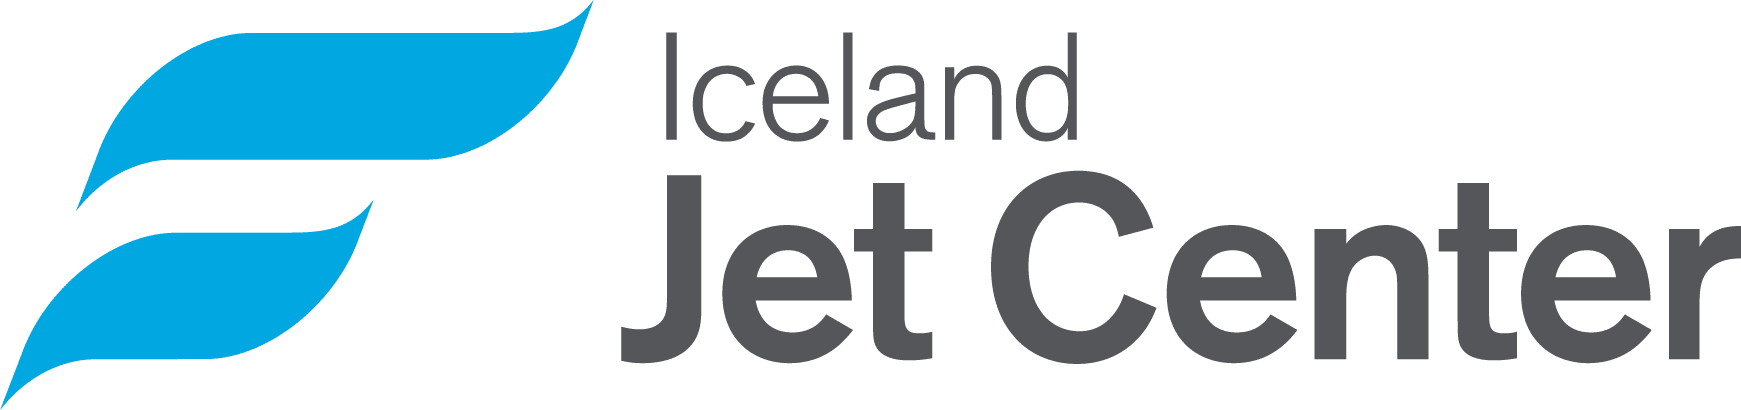 Iceland_Jet_Center_logo